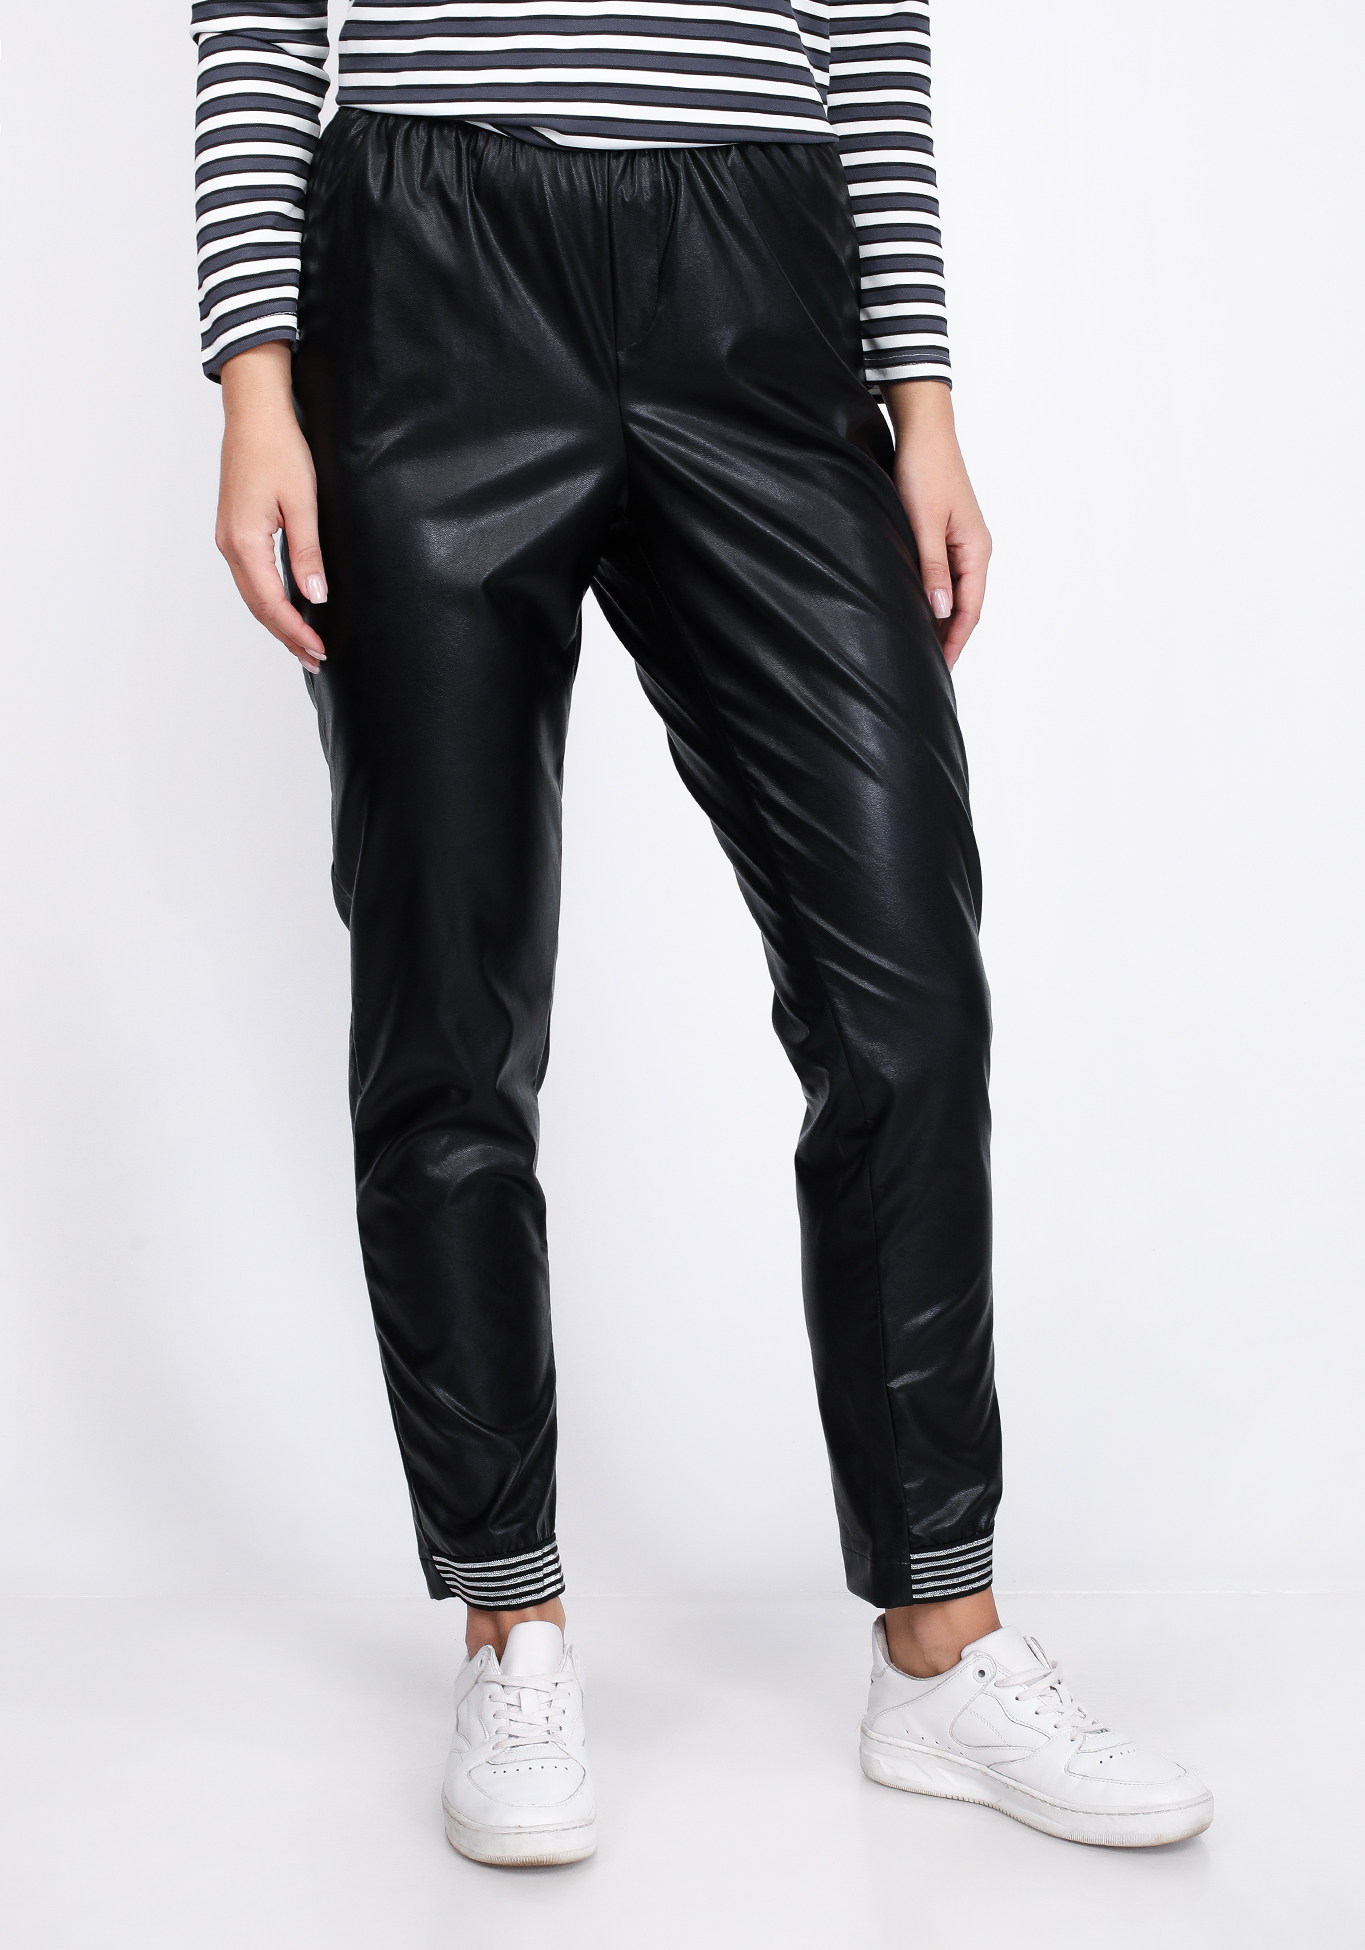 Брюки из эко-кожи с манжетам по низу изделия Star Fashion, размер 62, цвет черный - фото 6